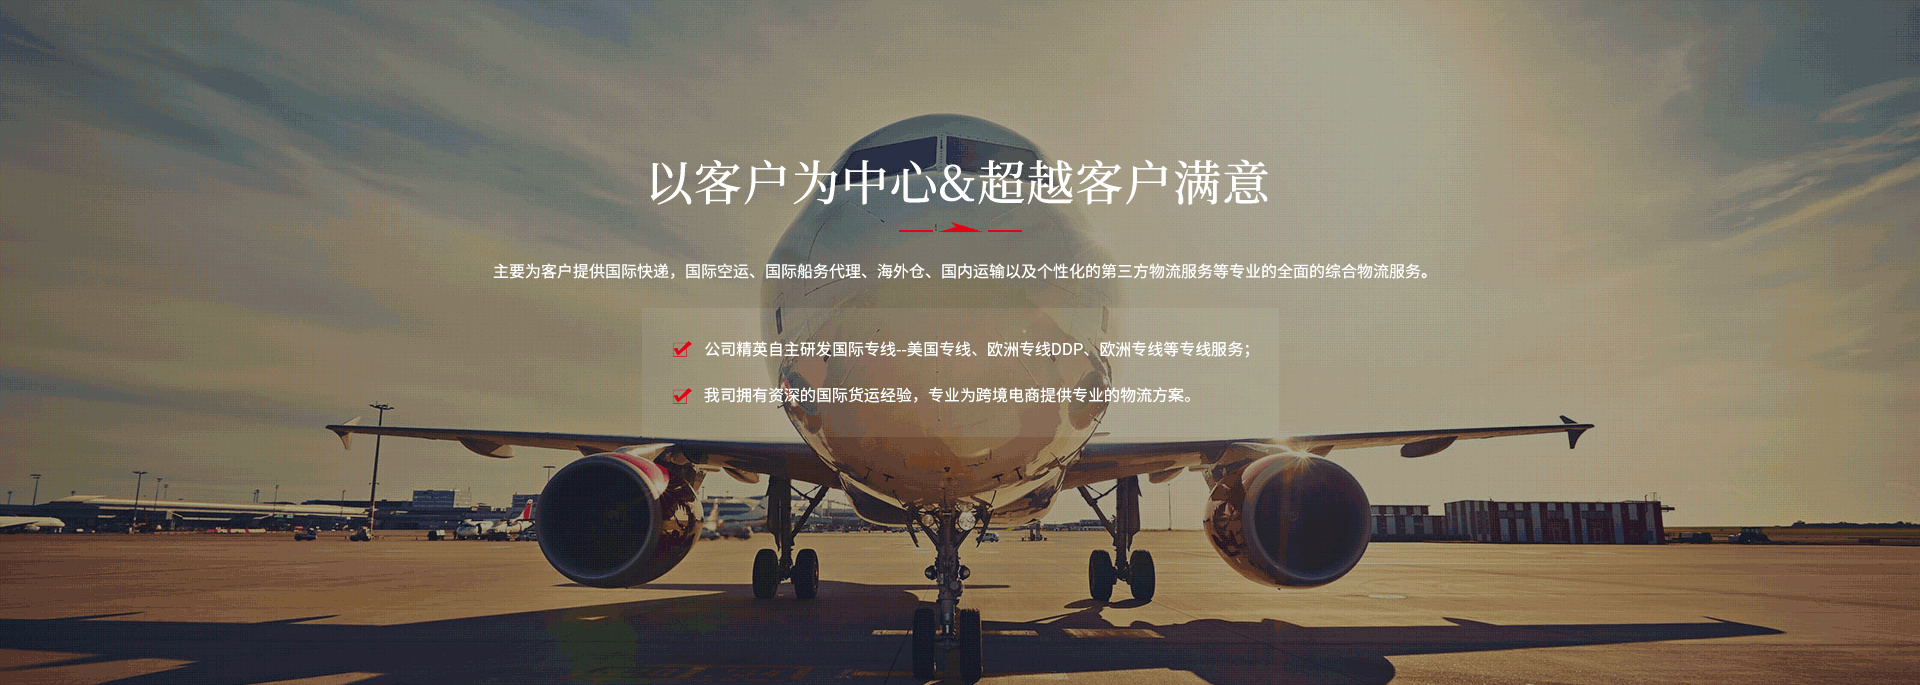 fba物流,fba空运,深圳市品嘉国际物流有限公司